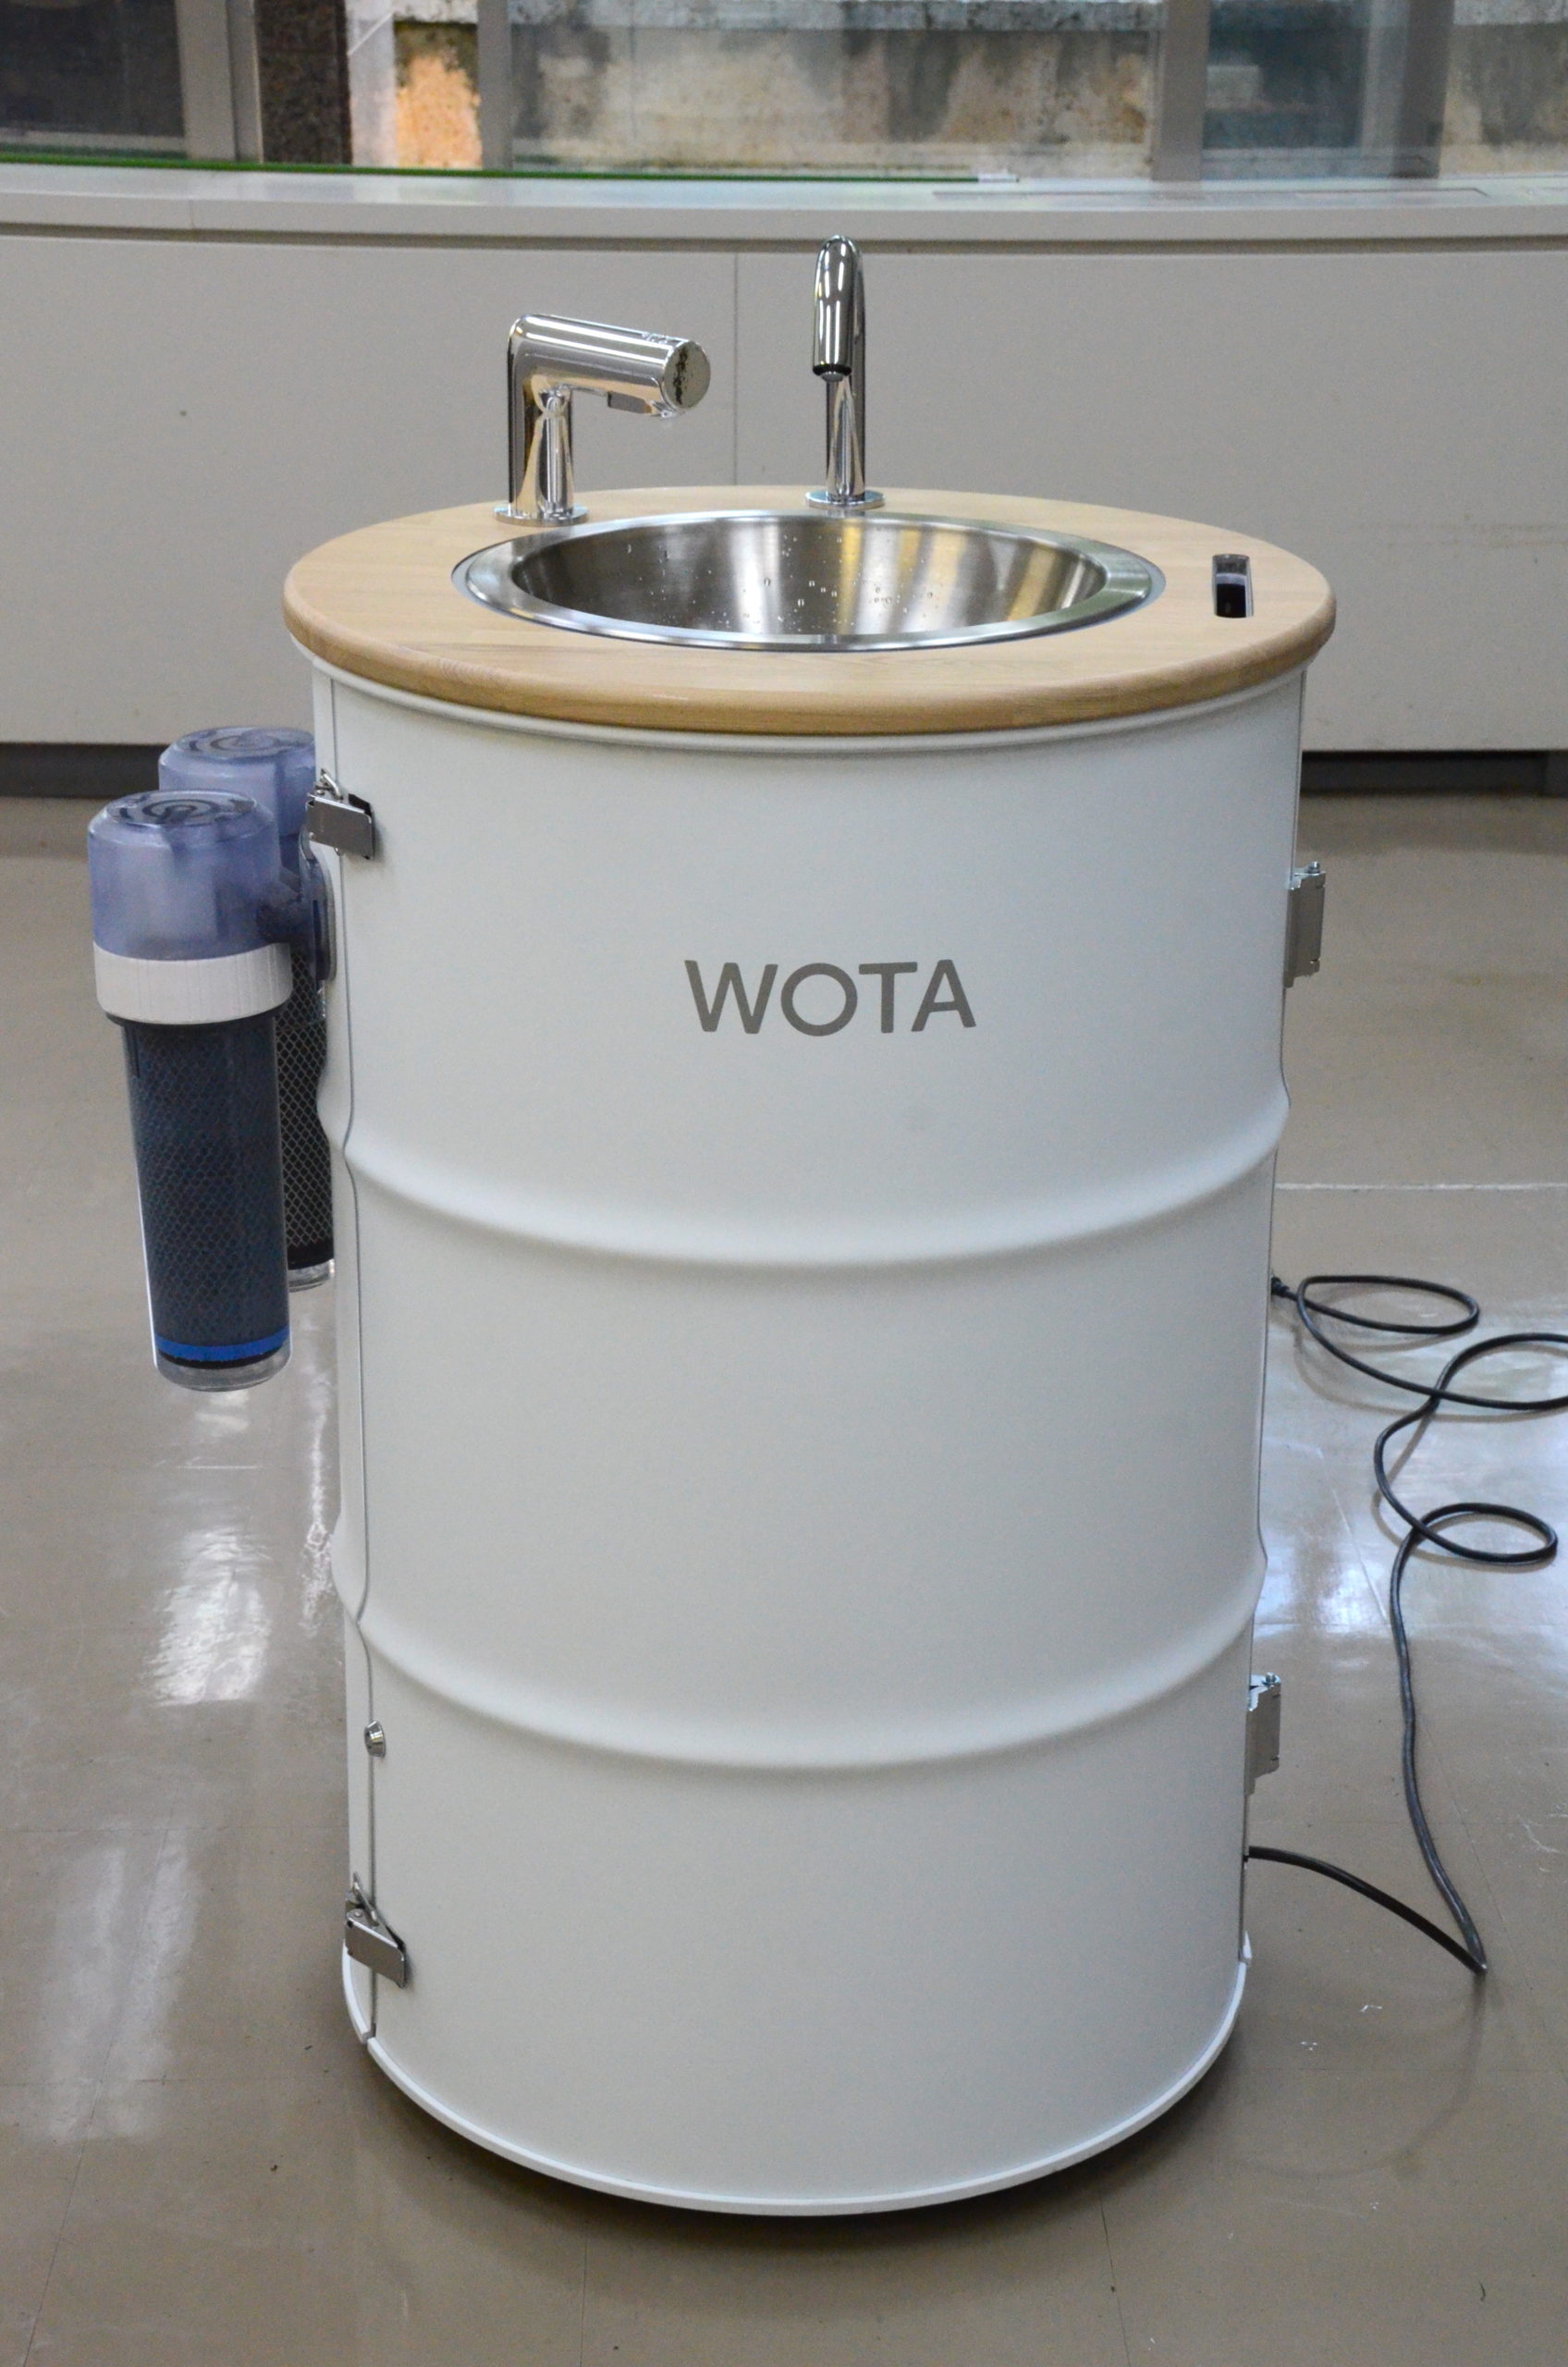 水道なしで手洗い除菌 循環型ポータブル手洗いスタンド「WOSH」 - HUB沖縄（つながる沖縄ニュースネット）